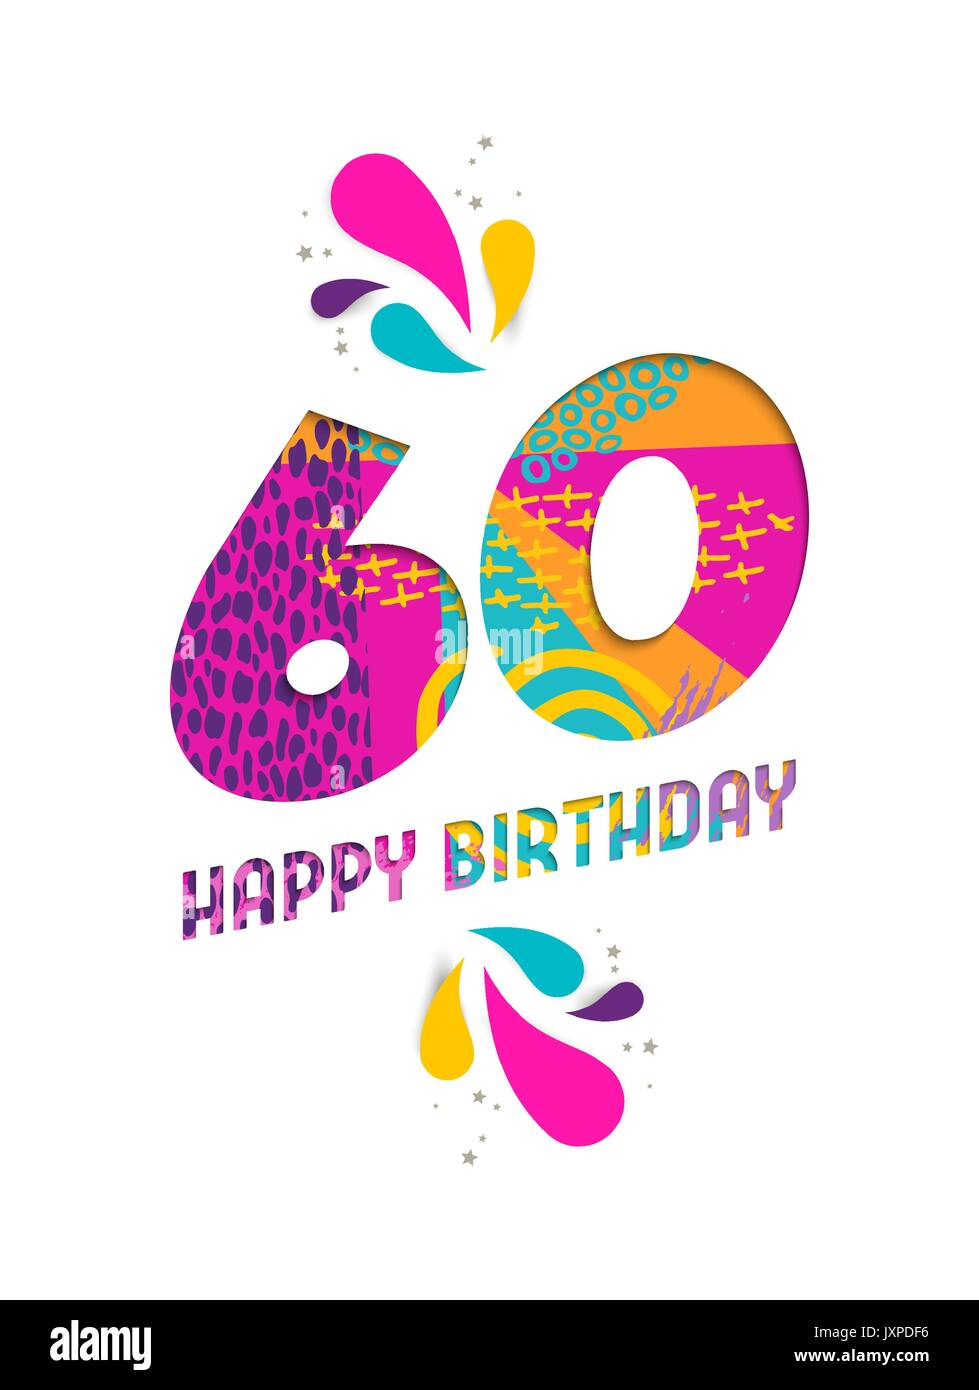 Joyeux anniversaire soixante ans 60, fun papier coupé numéro et le texte de l'étiquette avec colourful abstract art dessinés à la main, idéal pour un événement spécial, l'affiche greeti Illustration de Vecteur